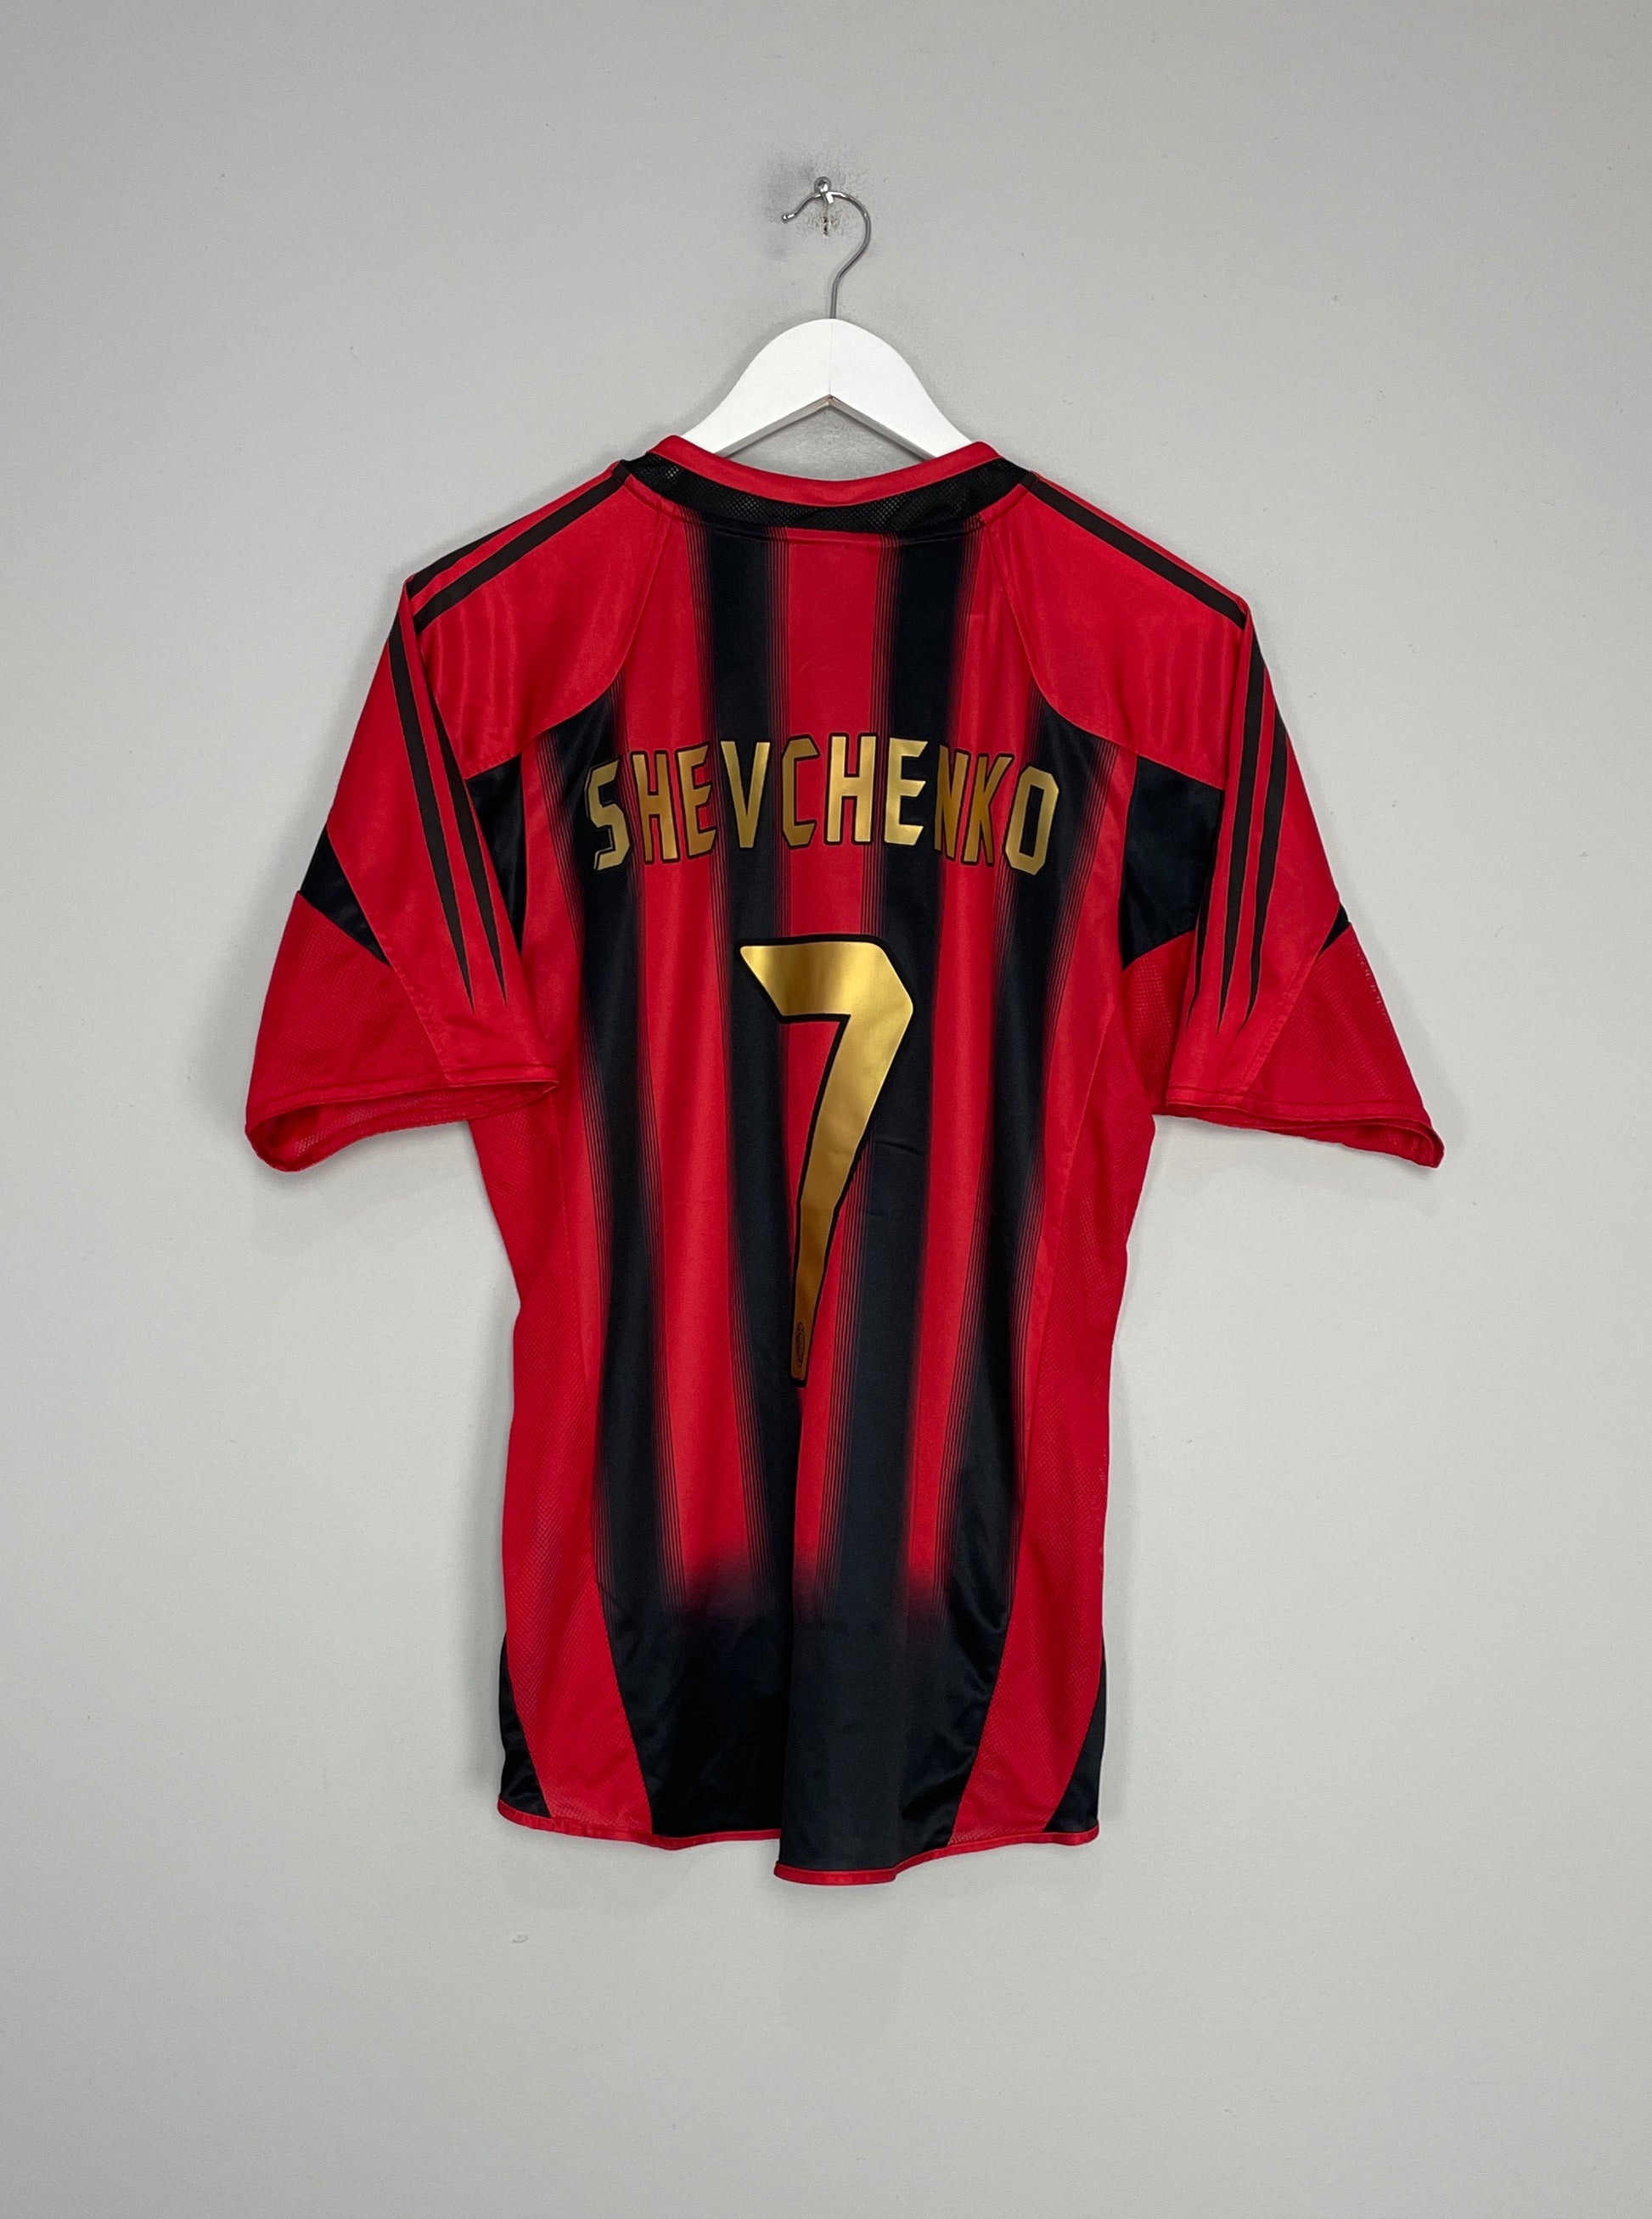 Image of the AC Milan Shevchenko shirt from the 2004/05 season